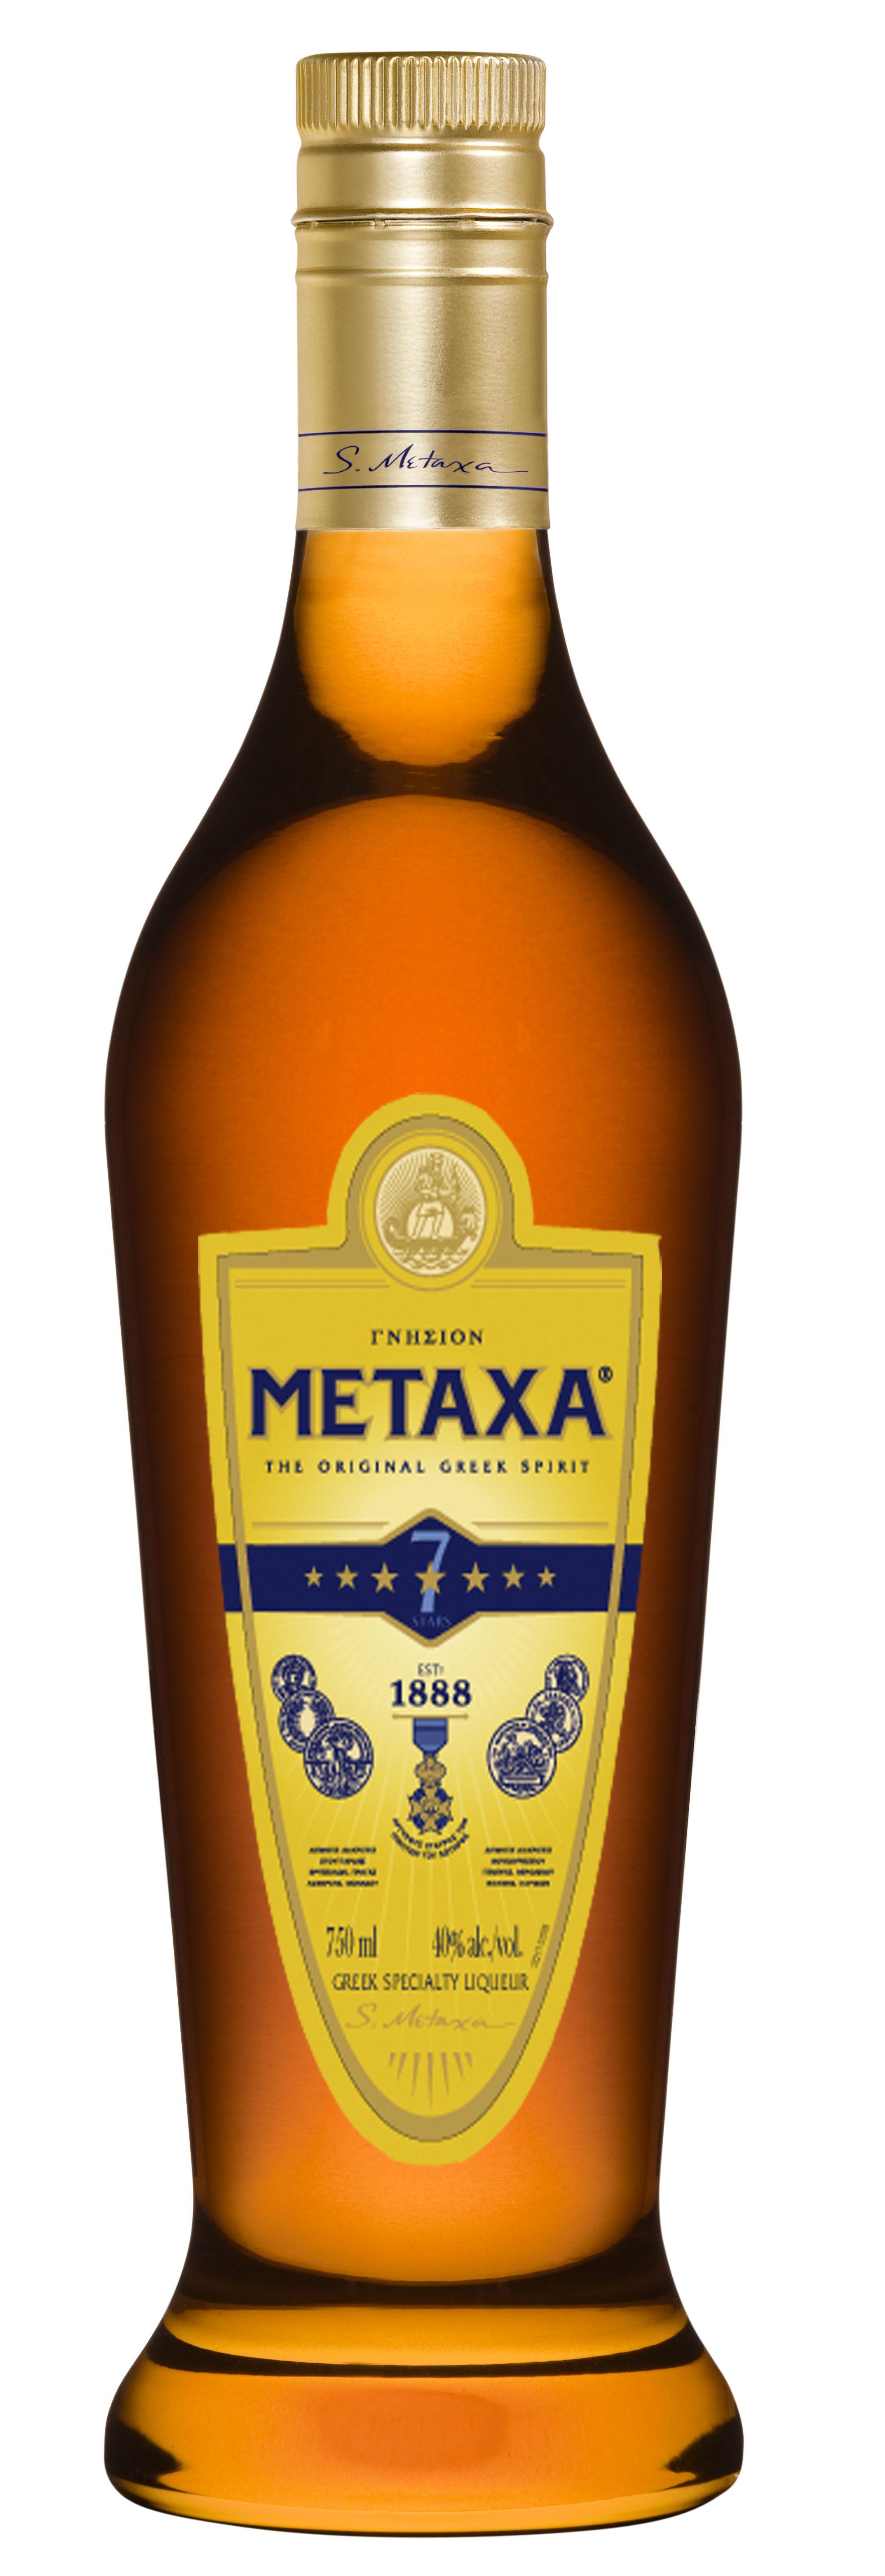 metaxa